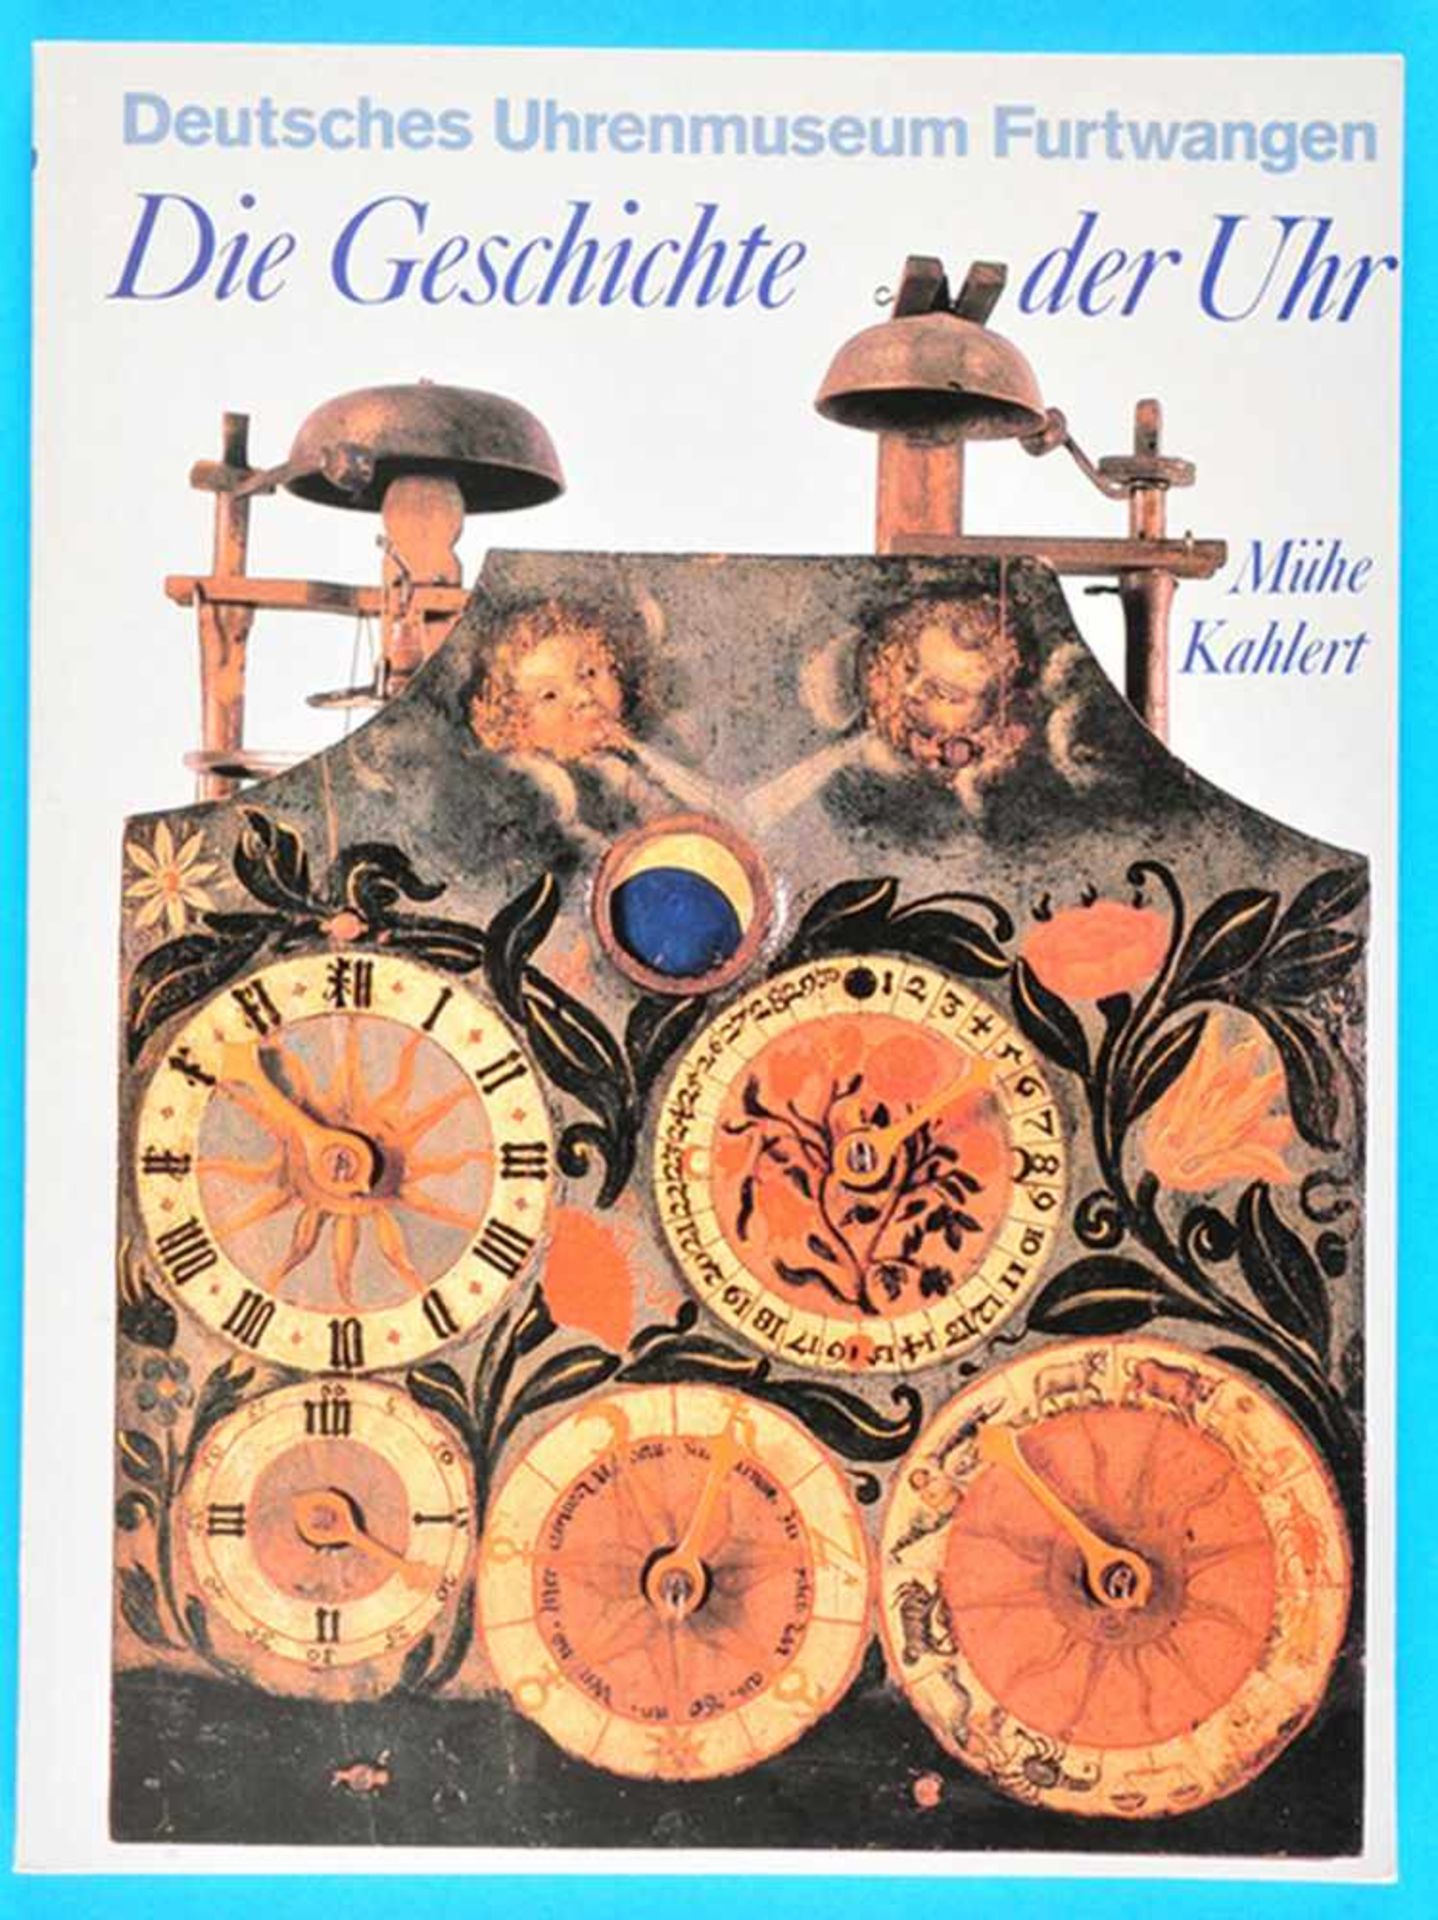 Mühe/Kahlert, Die Geschichte der Uhr, Deutsches Uhrenmuseum FurtwangenMühe/Kahlert, Die Geschichte